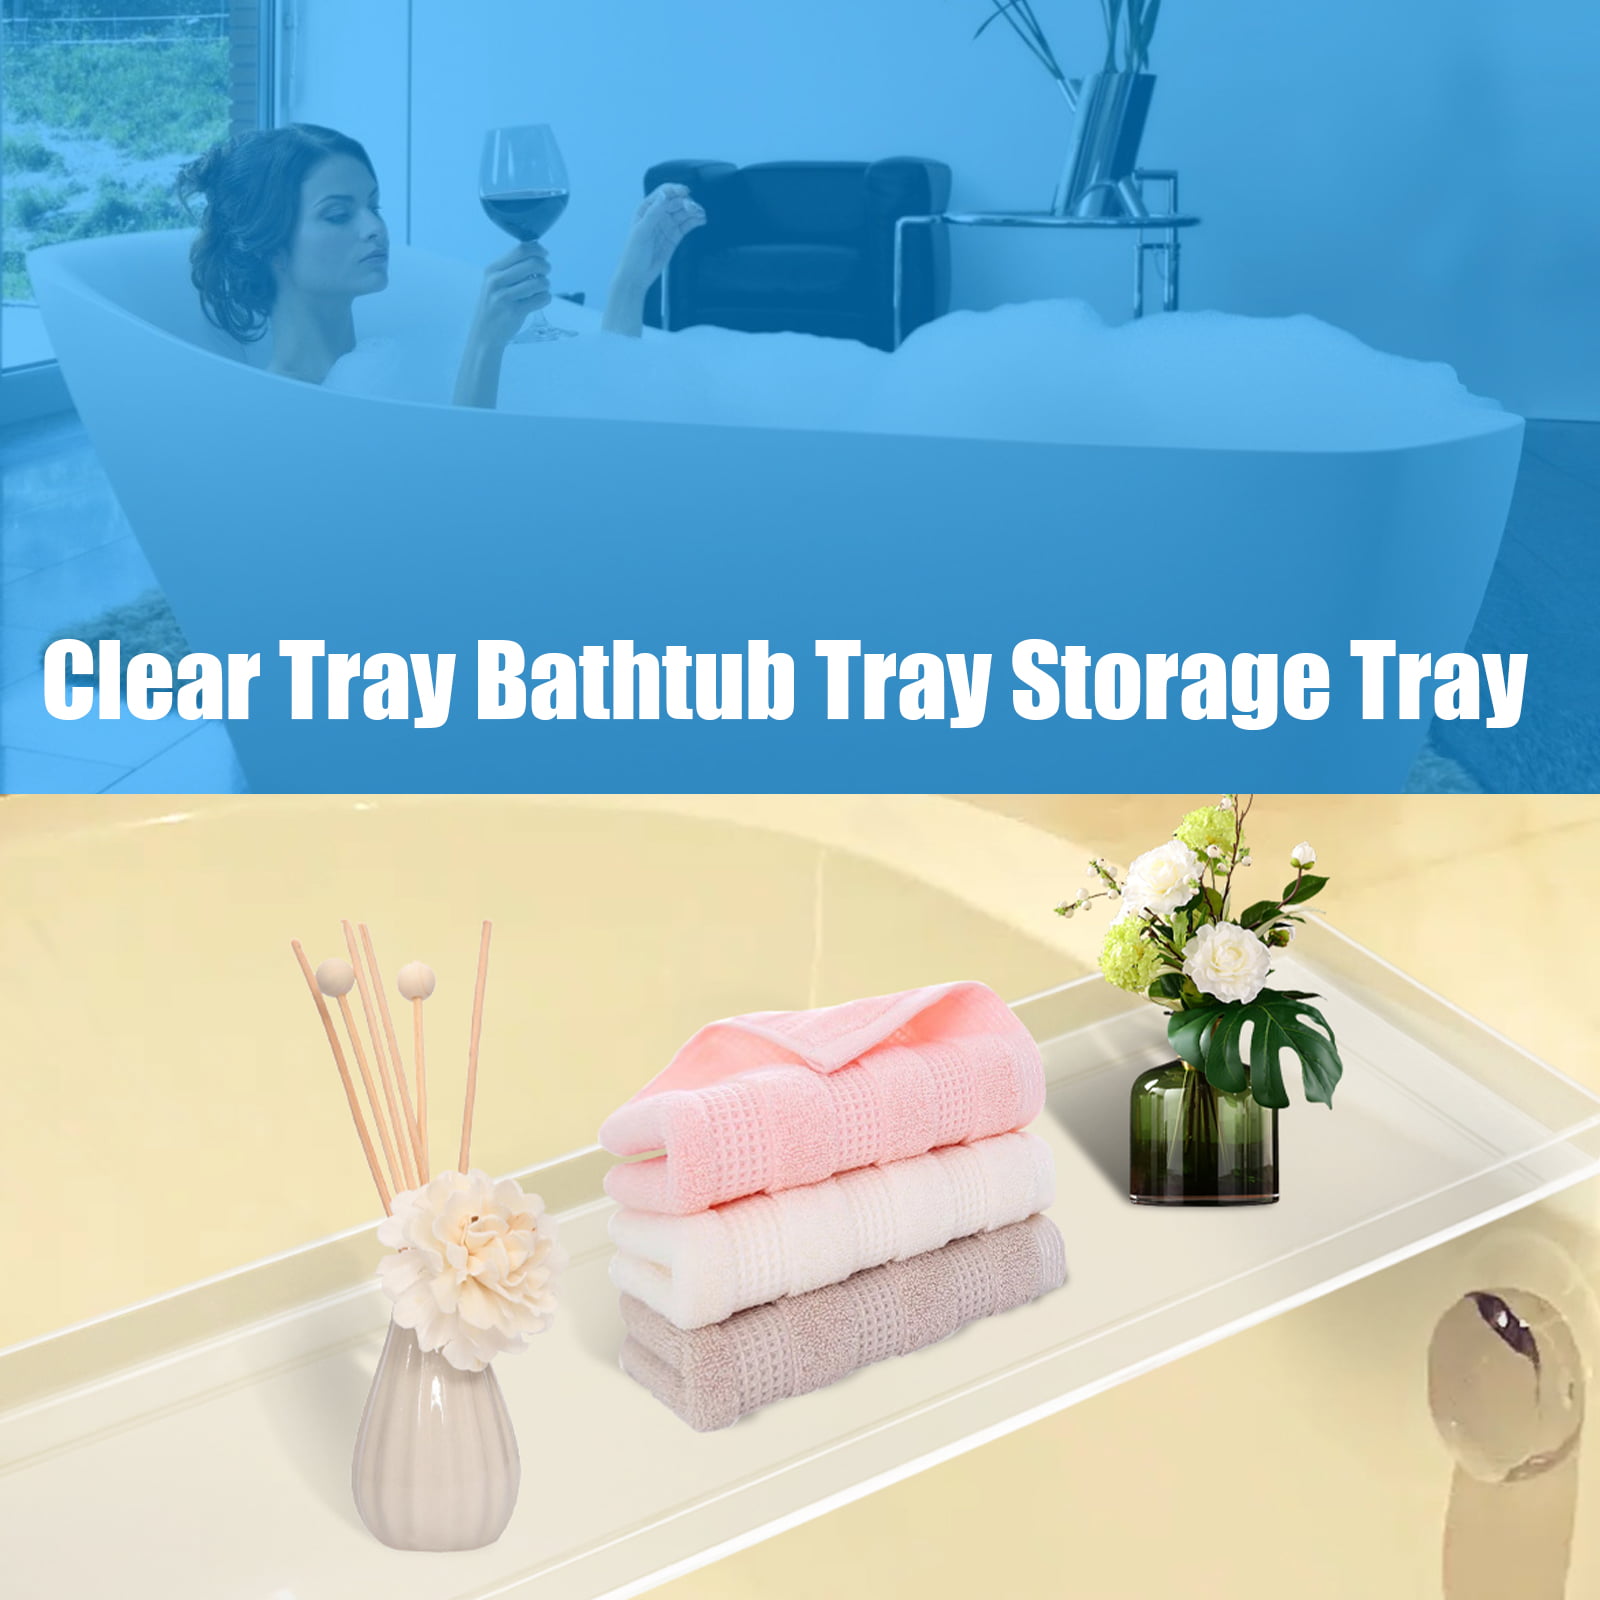 Bathroom Artificial Acrylic Stone Bath Caddy Tray Bathtub Rack